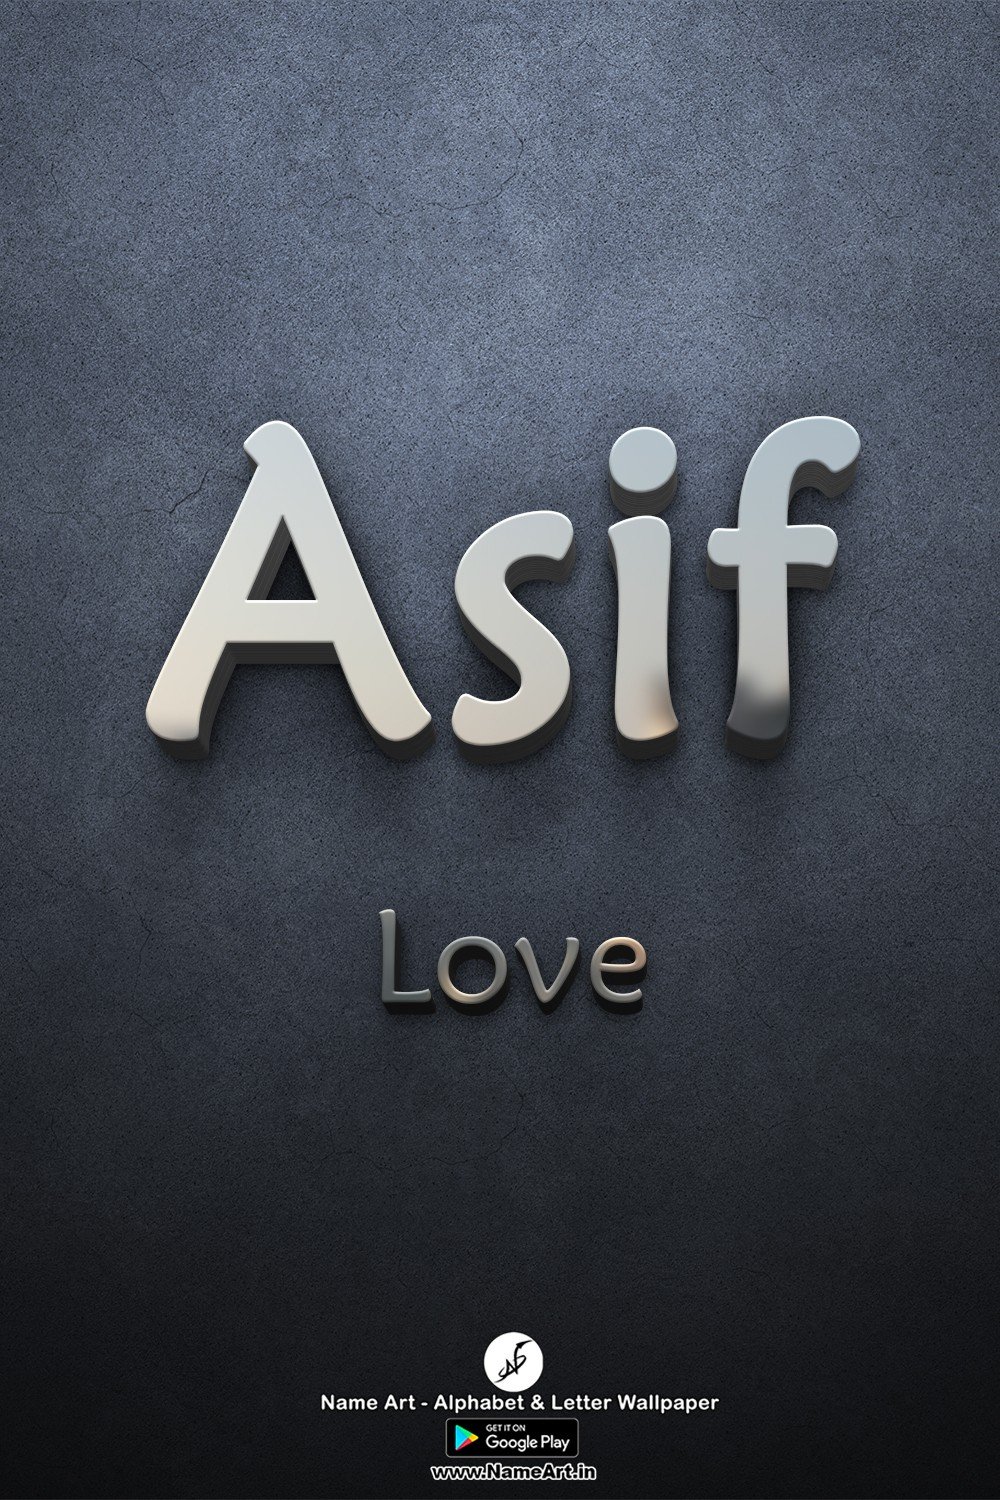 Asif | Whatsapp Status Asif | Happy Birthday Asif !! | New Whatsapp Status Asif Images |